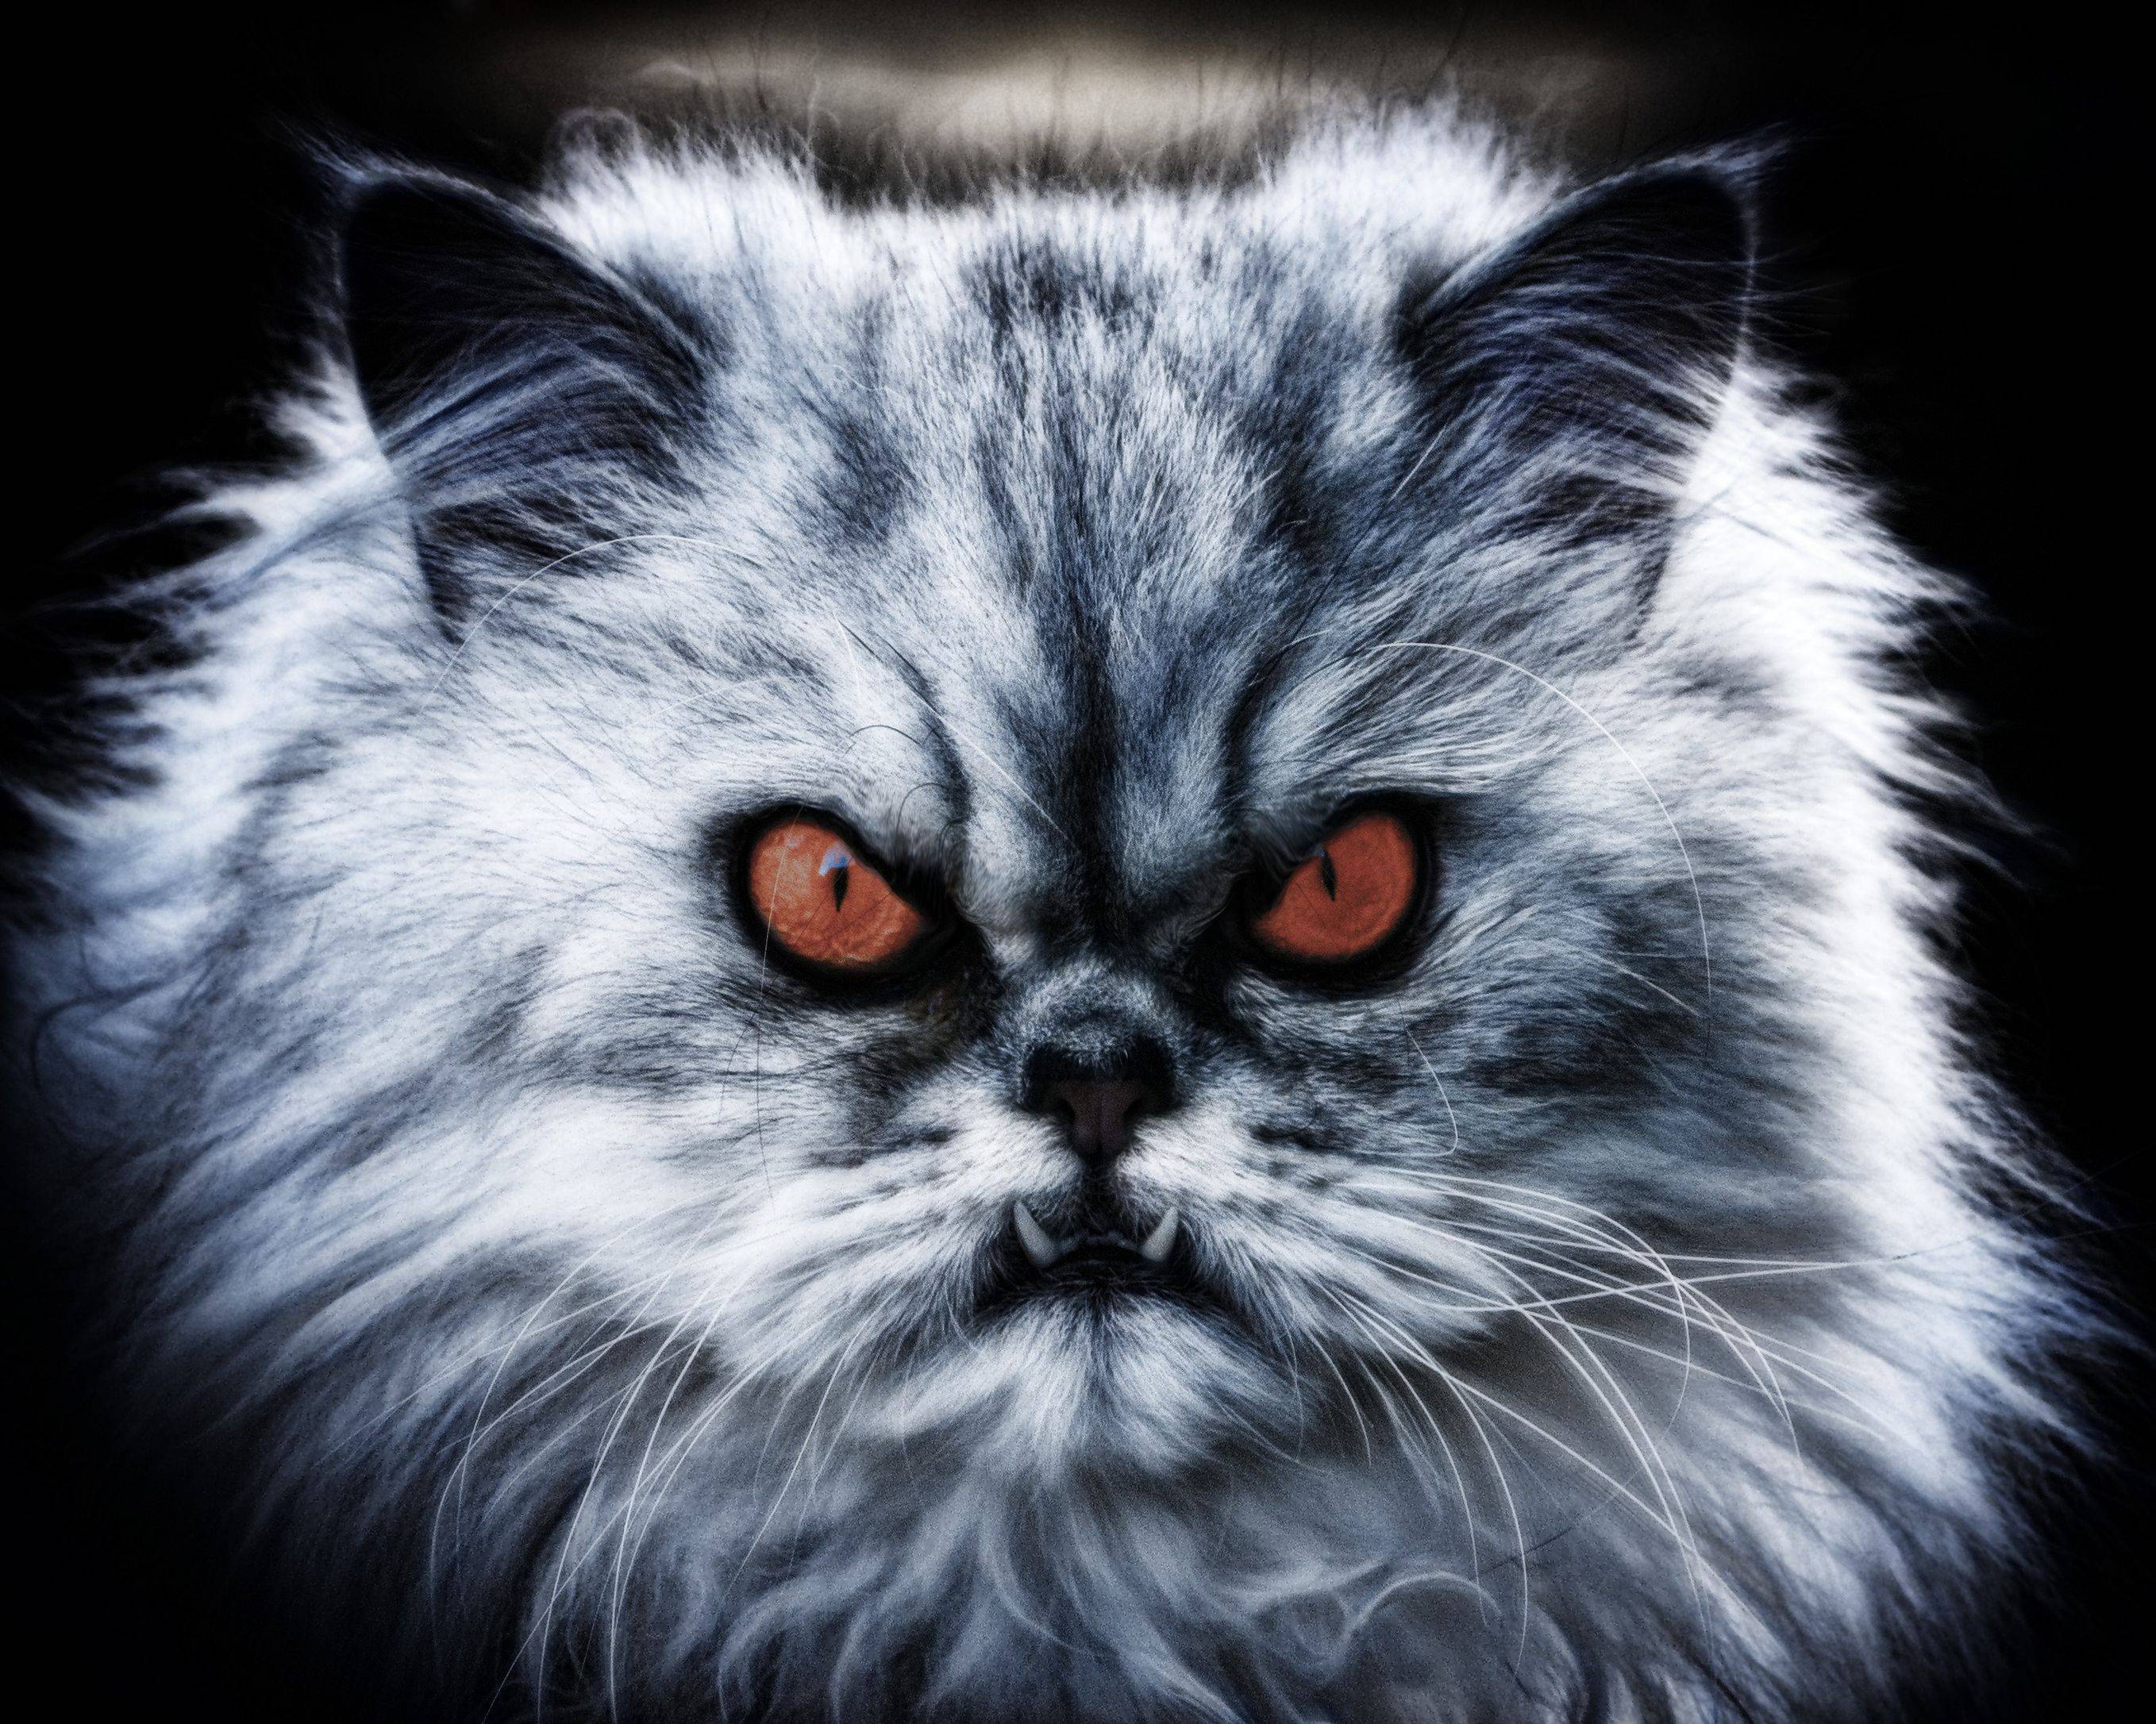 Самая злая кошка: названия пород, их описания и фото